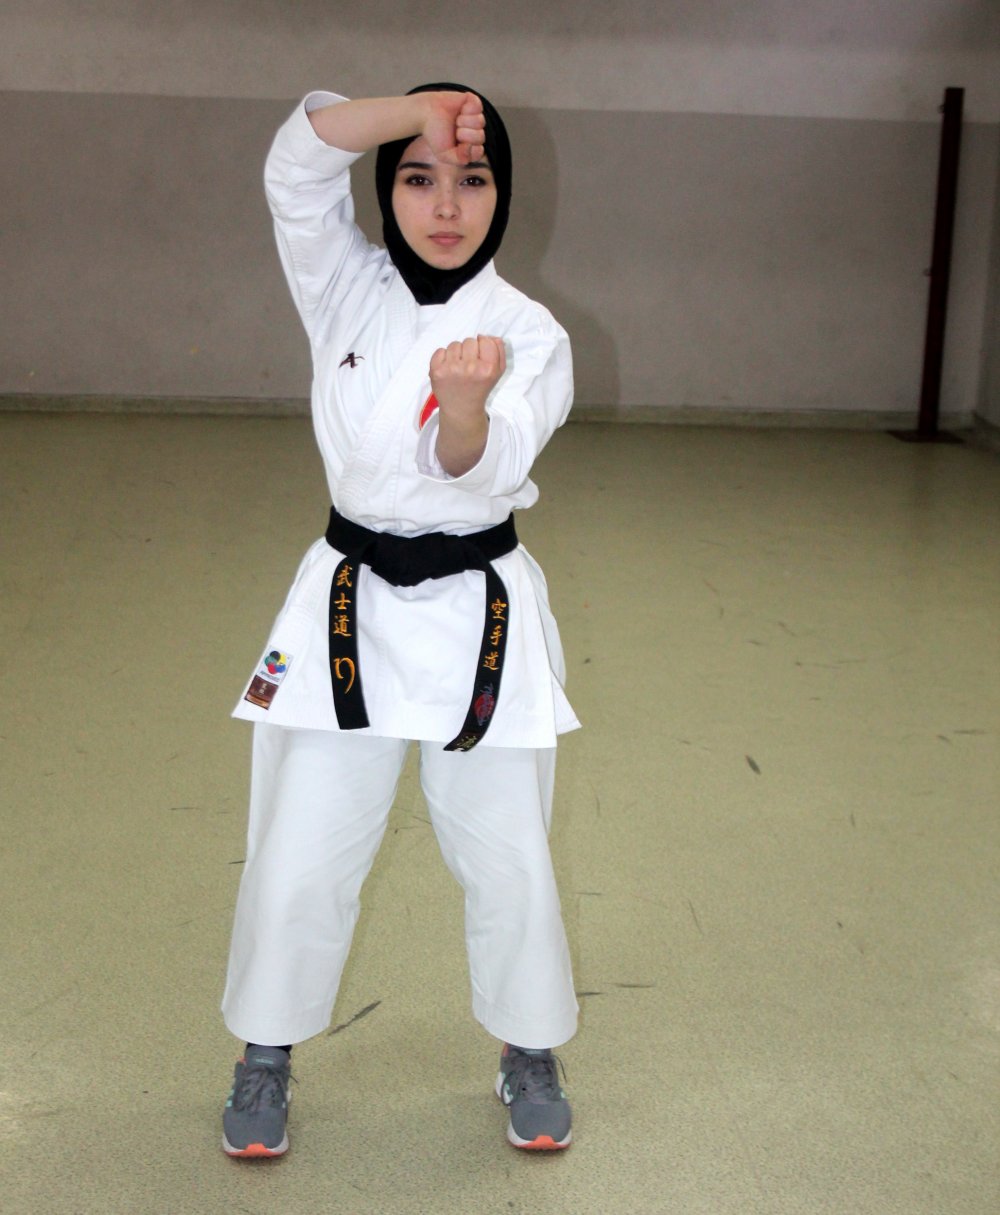 Kendini korumak için karateye başladı, Avrupa şampiyonu oldu